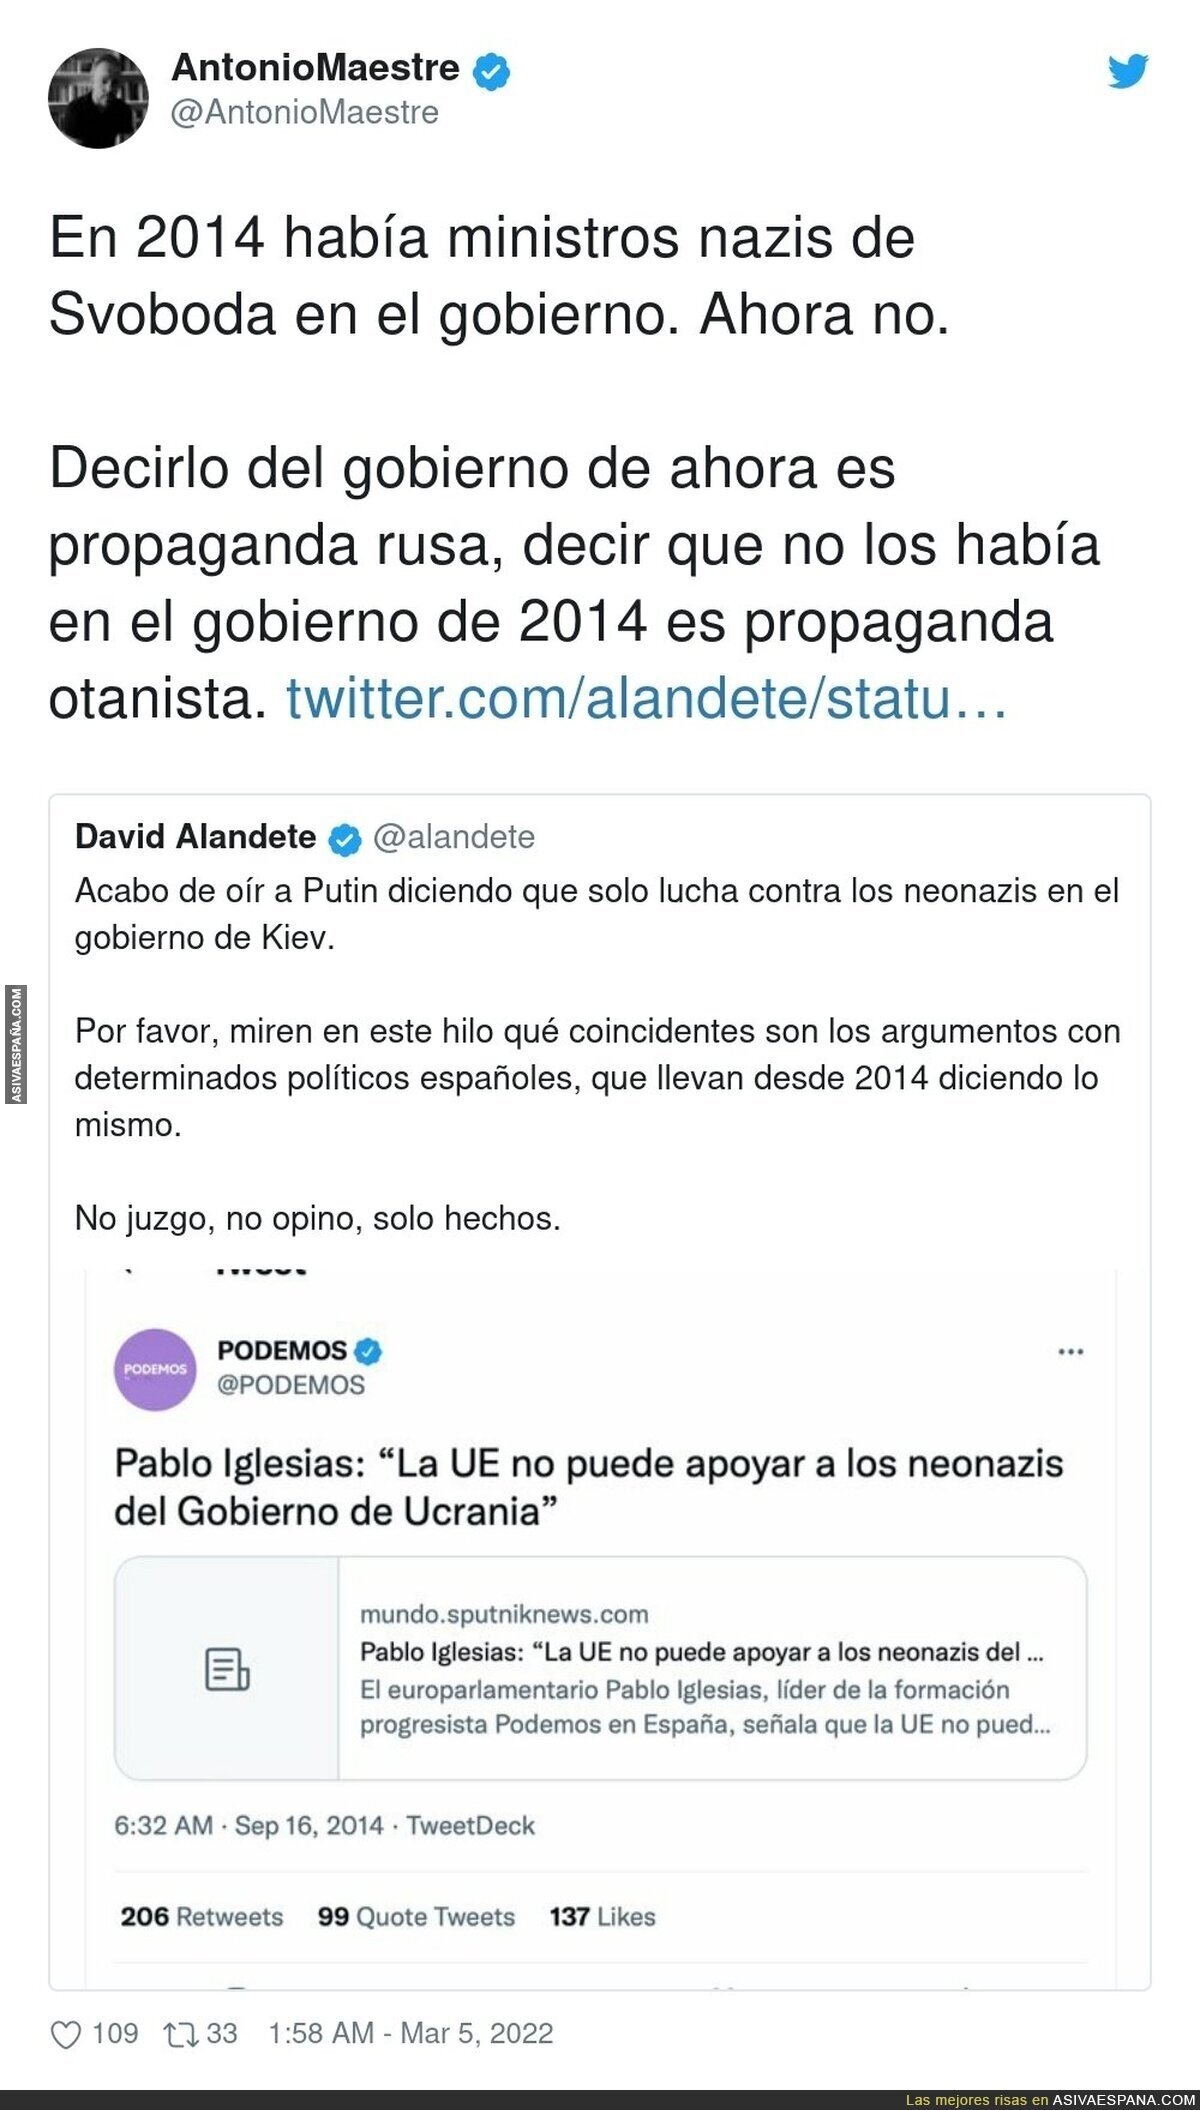 David Alandete pone en marcha su maquinaria contra Podemos con falsedades